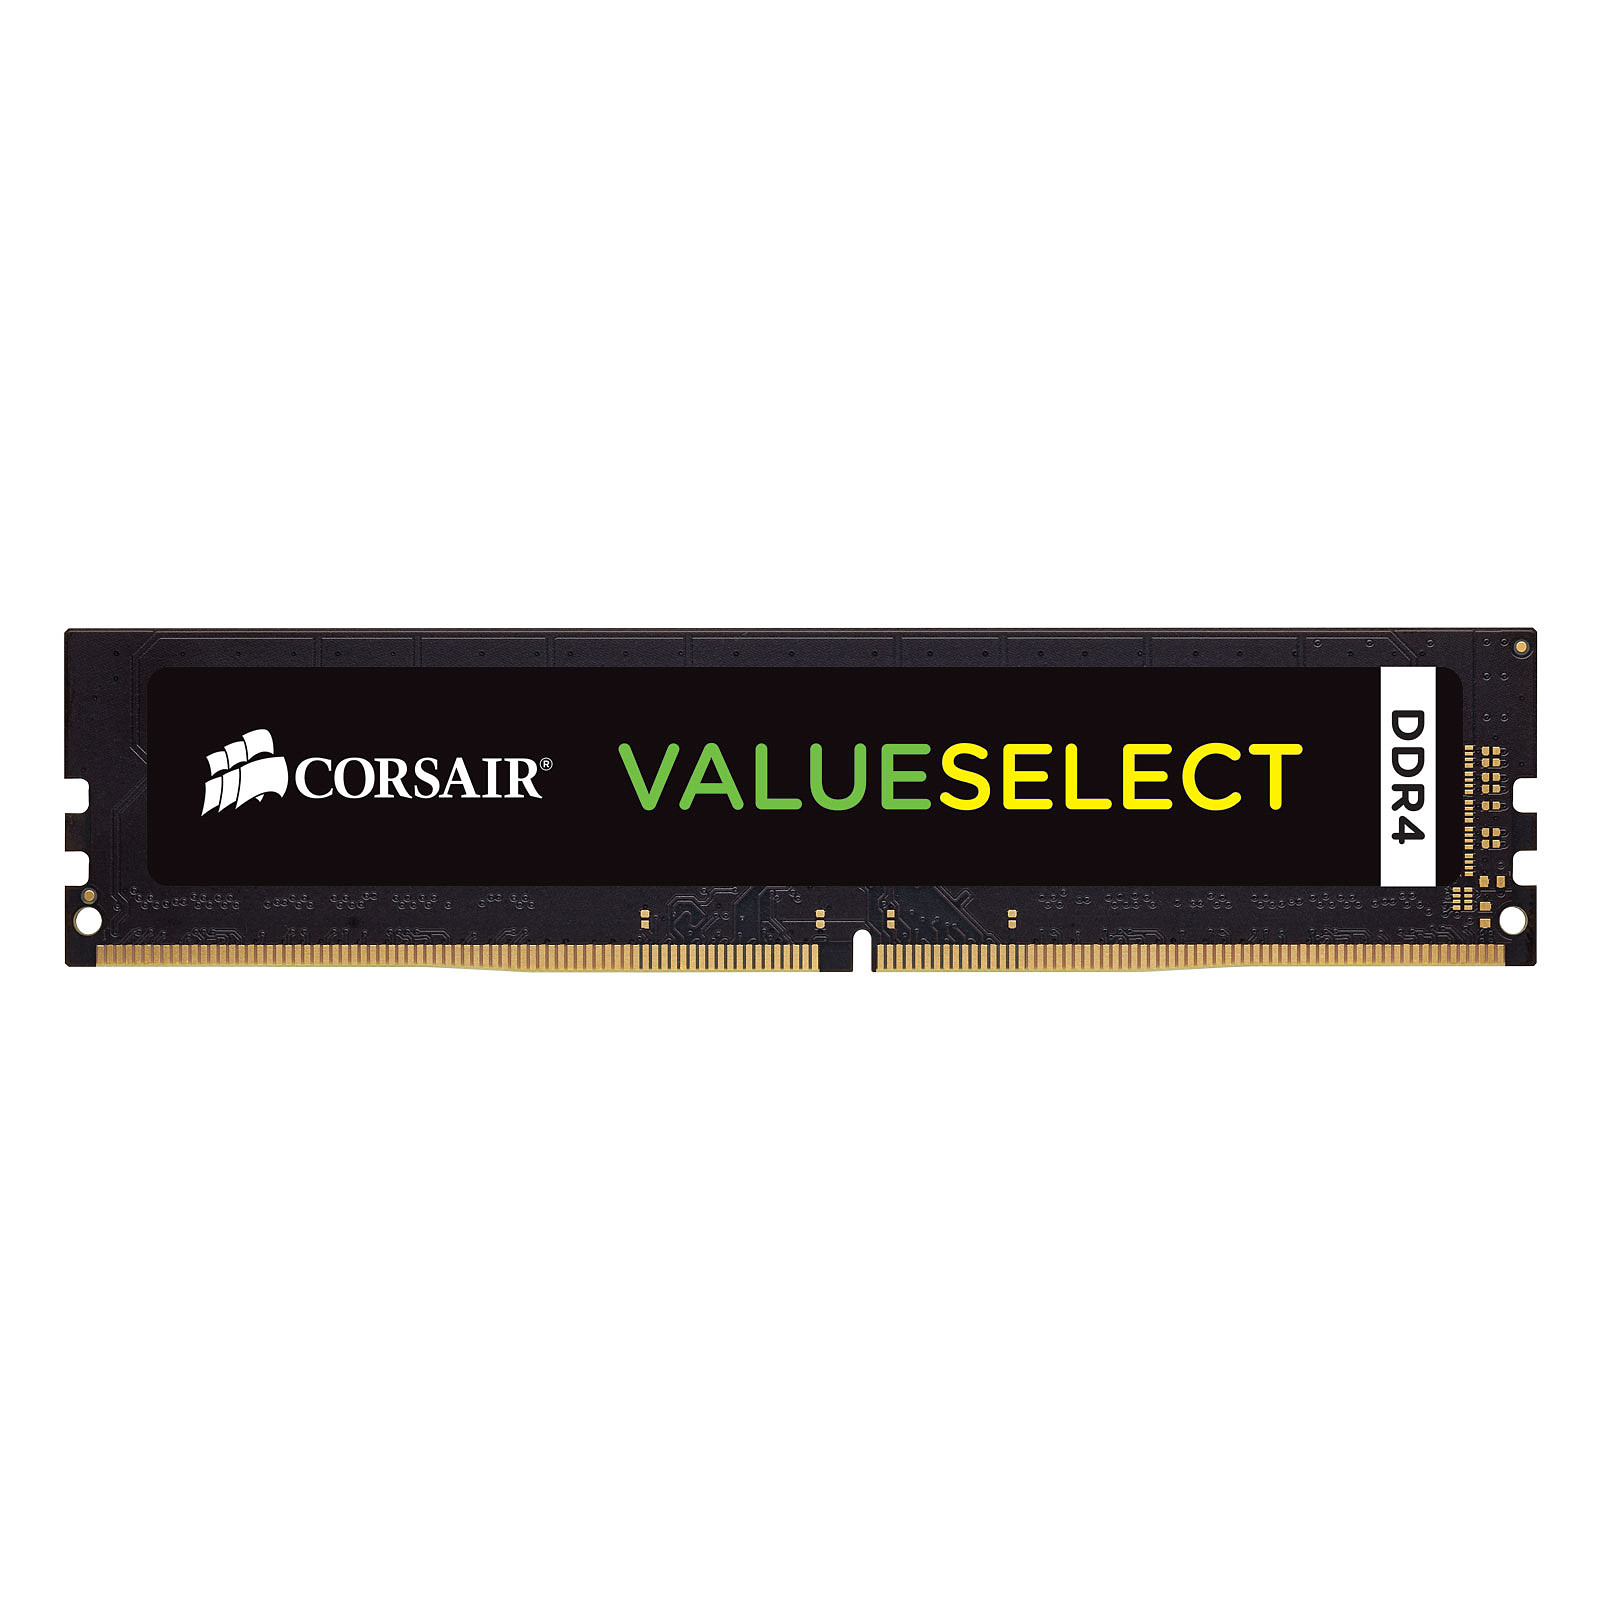 Corsair ValueSelect 16 Go DDR4 2400 MHz CL16 - Memoire PC Corsair